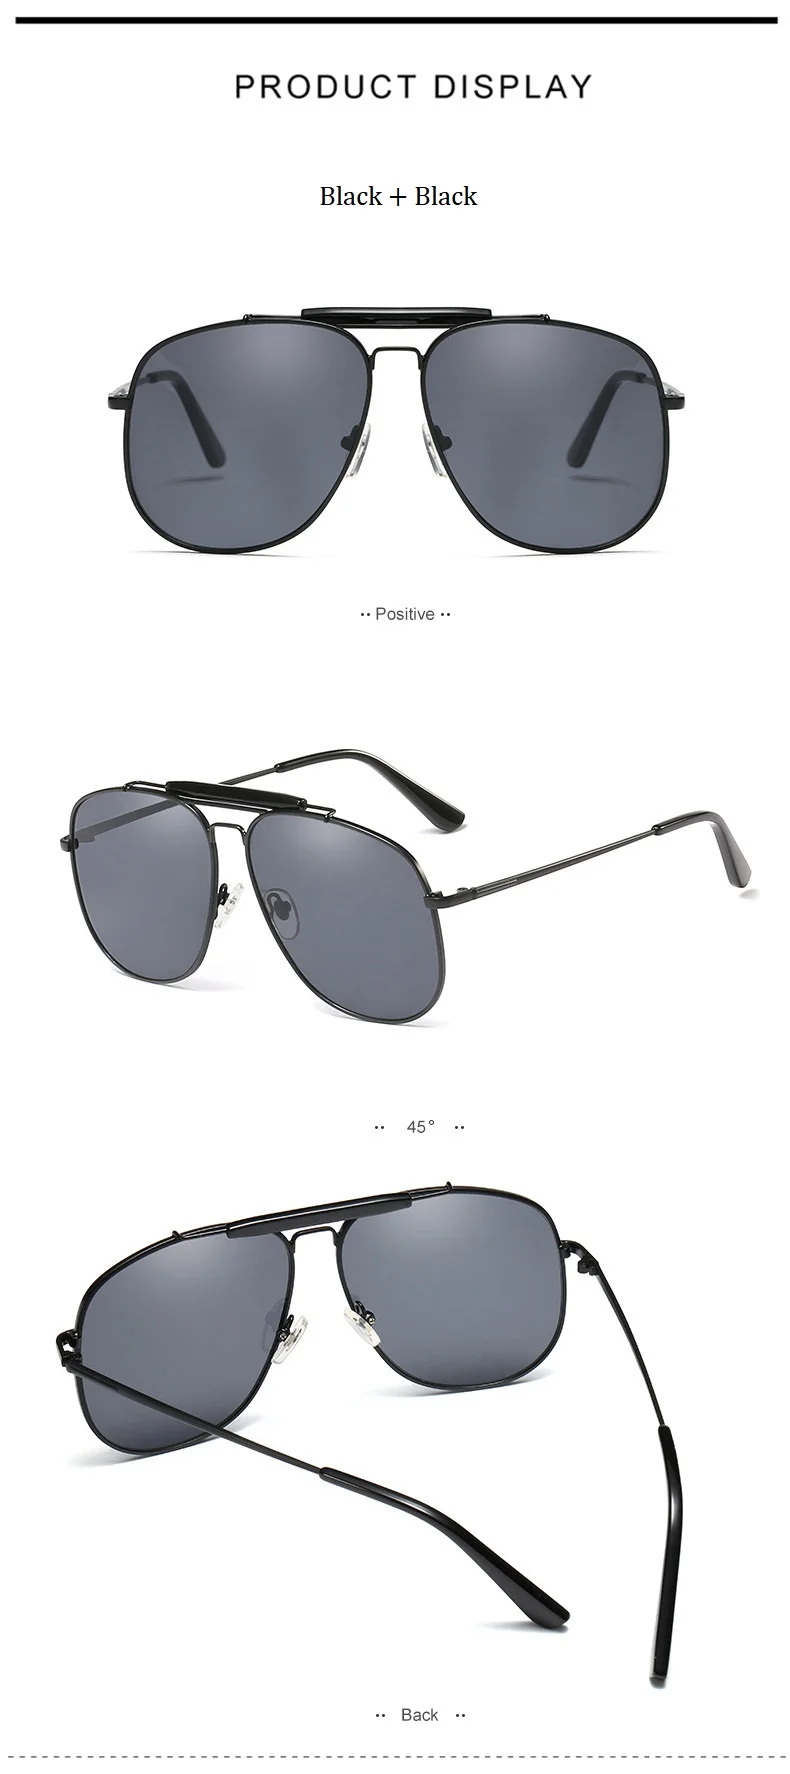 2019 Новые элегантные женские квадратные солнцезащитные очки для женщин, роскошные брендовые дизайнерские итальянские солнцезащитные очки